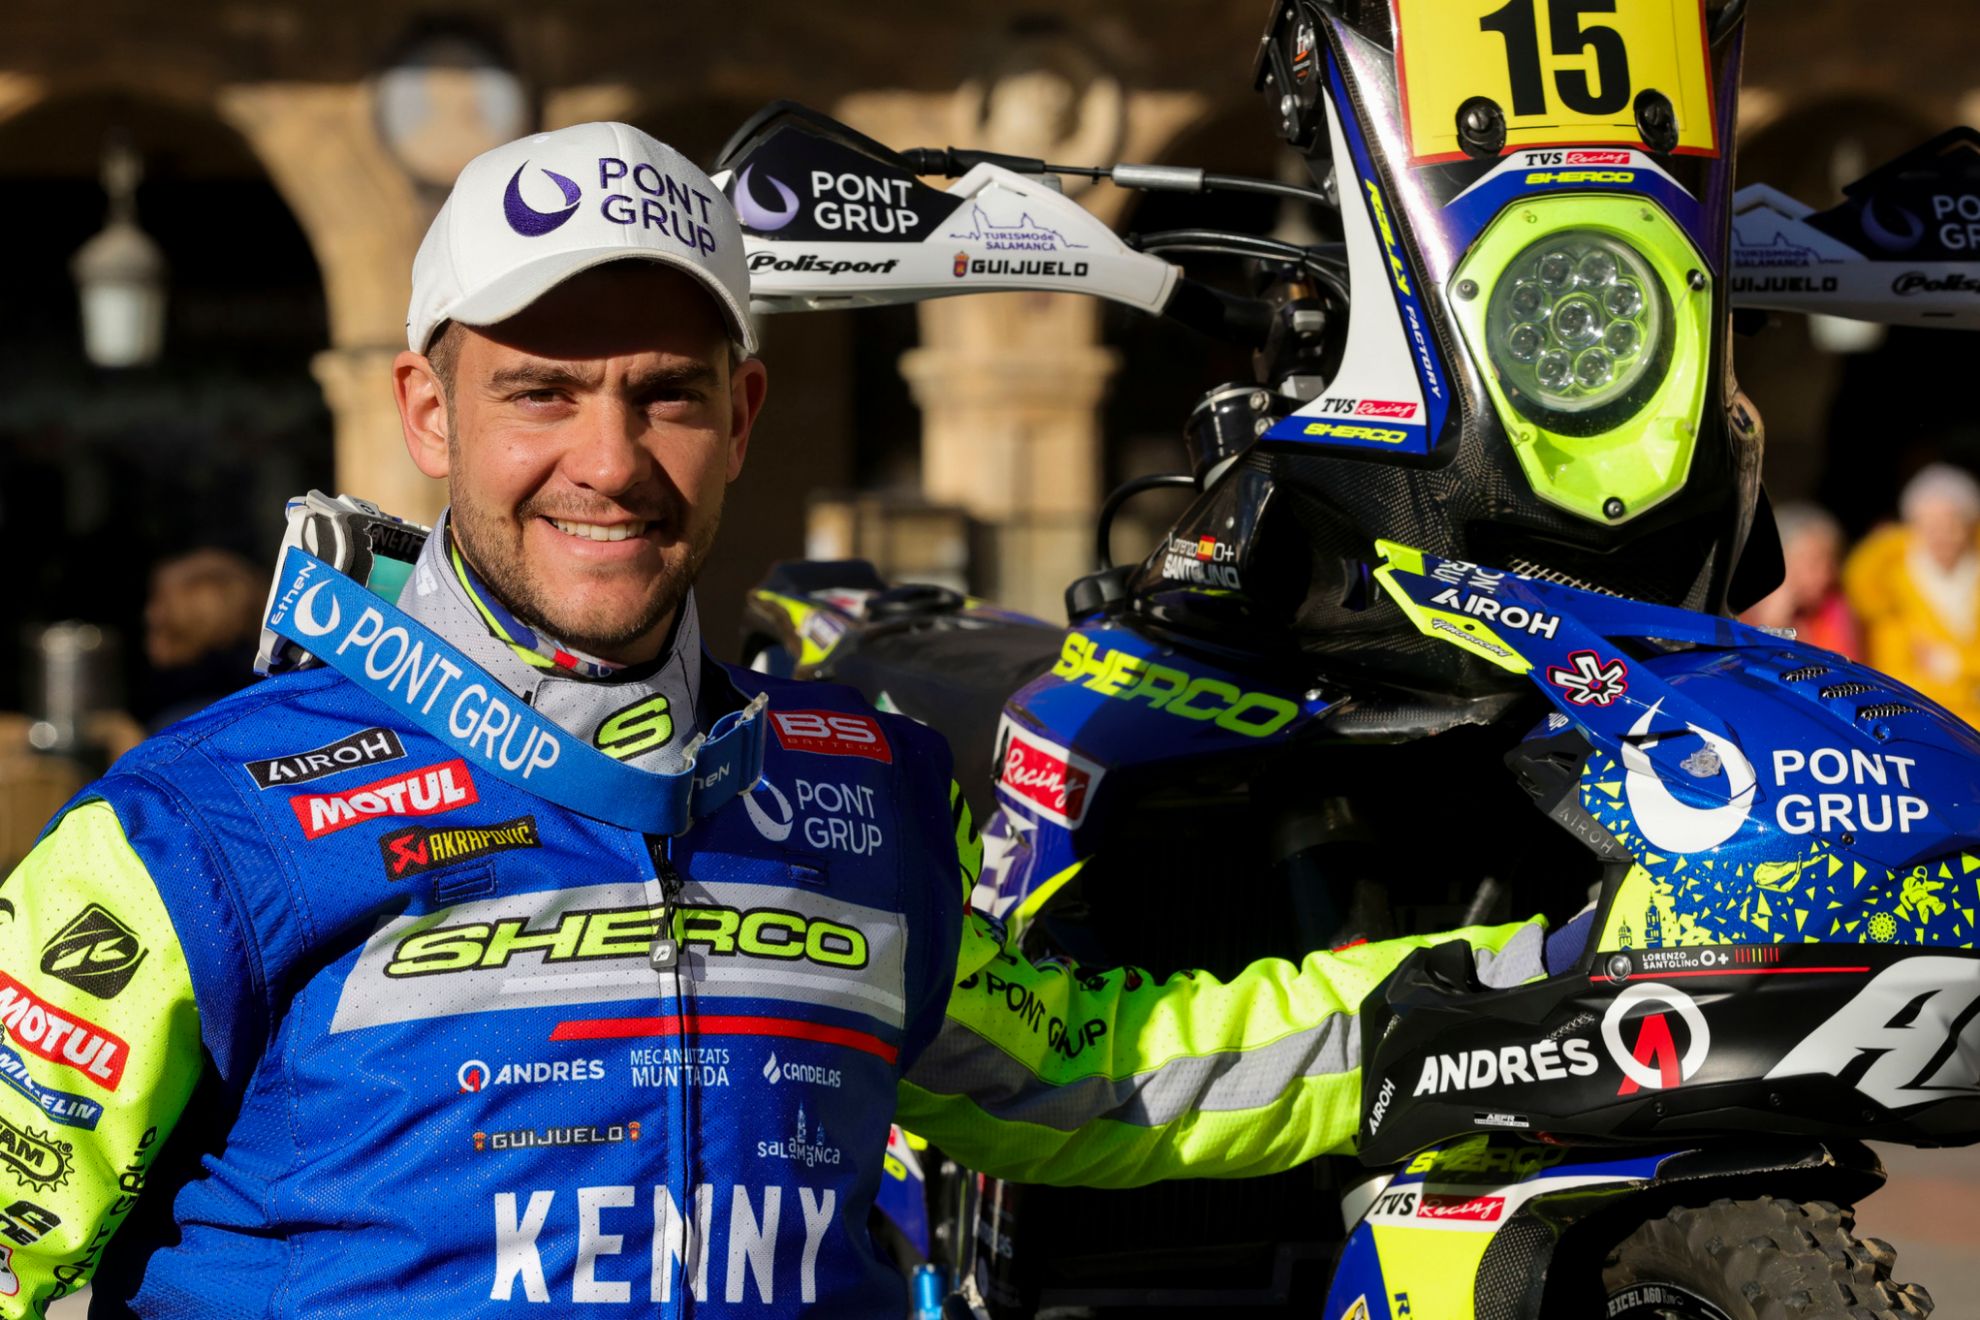 Lorenzo Santolino liderar a Sherco y aspira al top 5 en motos.